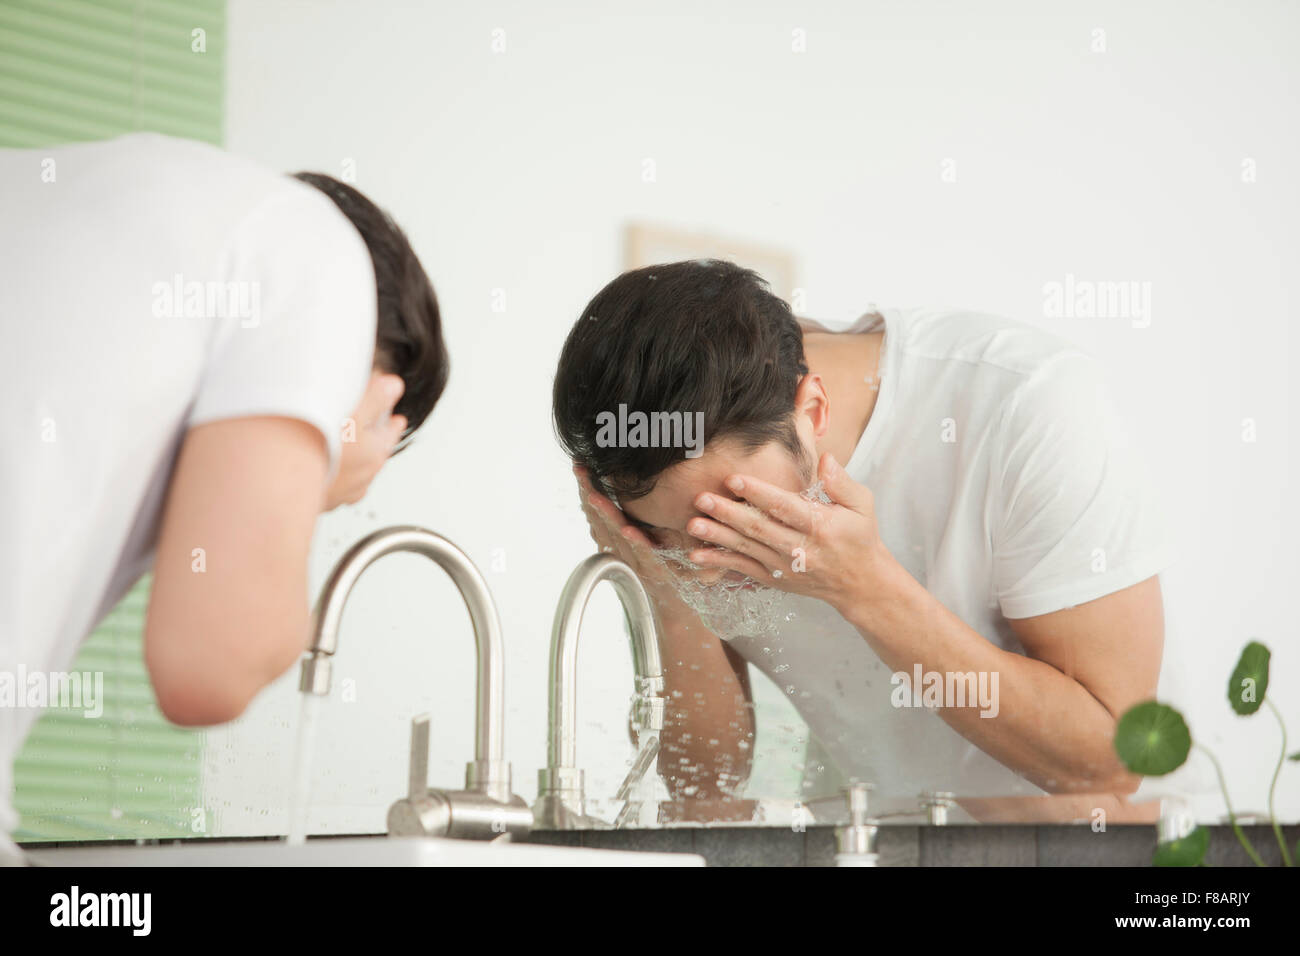 Seite Ansicht Porträt des jungen Mannes sein Gesicht am Waschbecken im Bad waschen Stockfoto